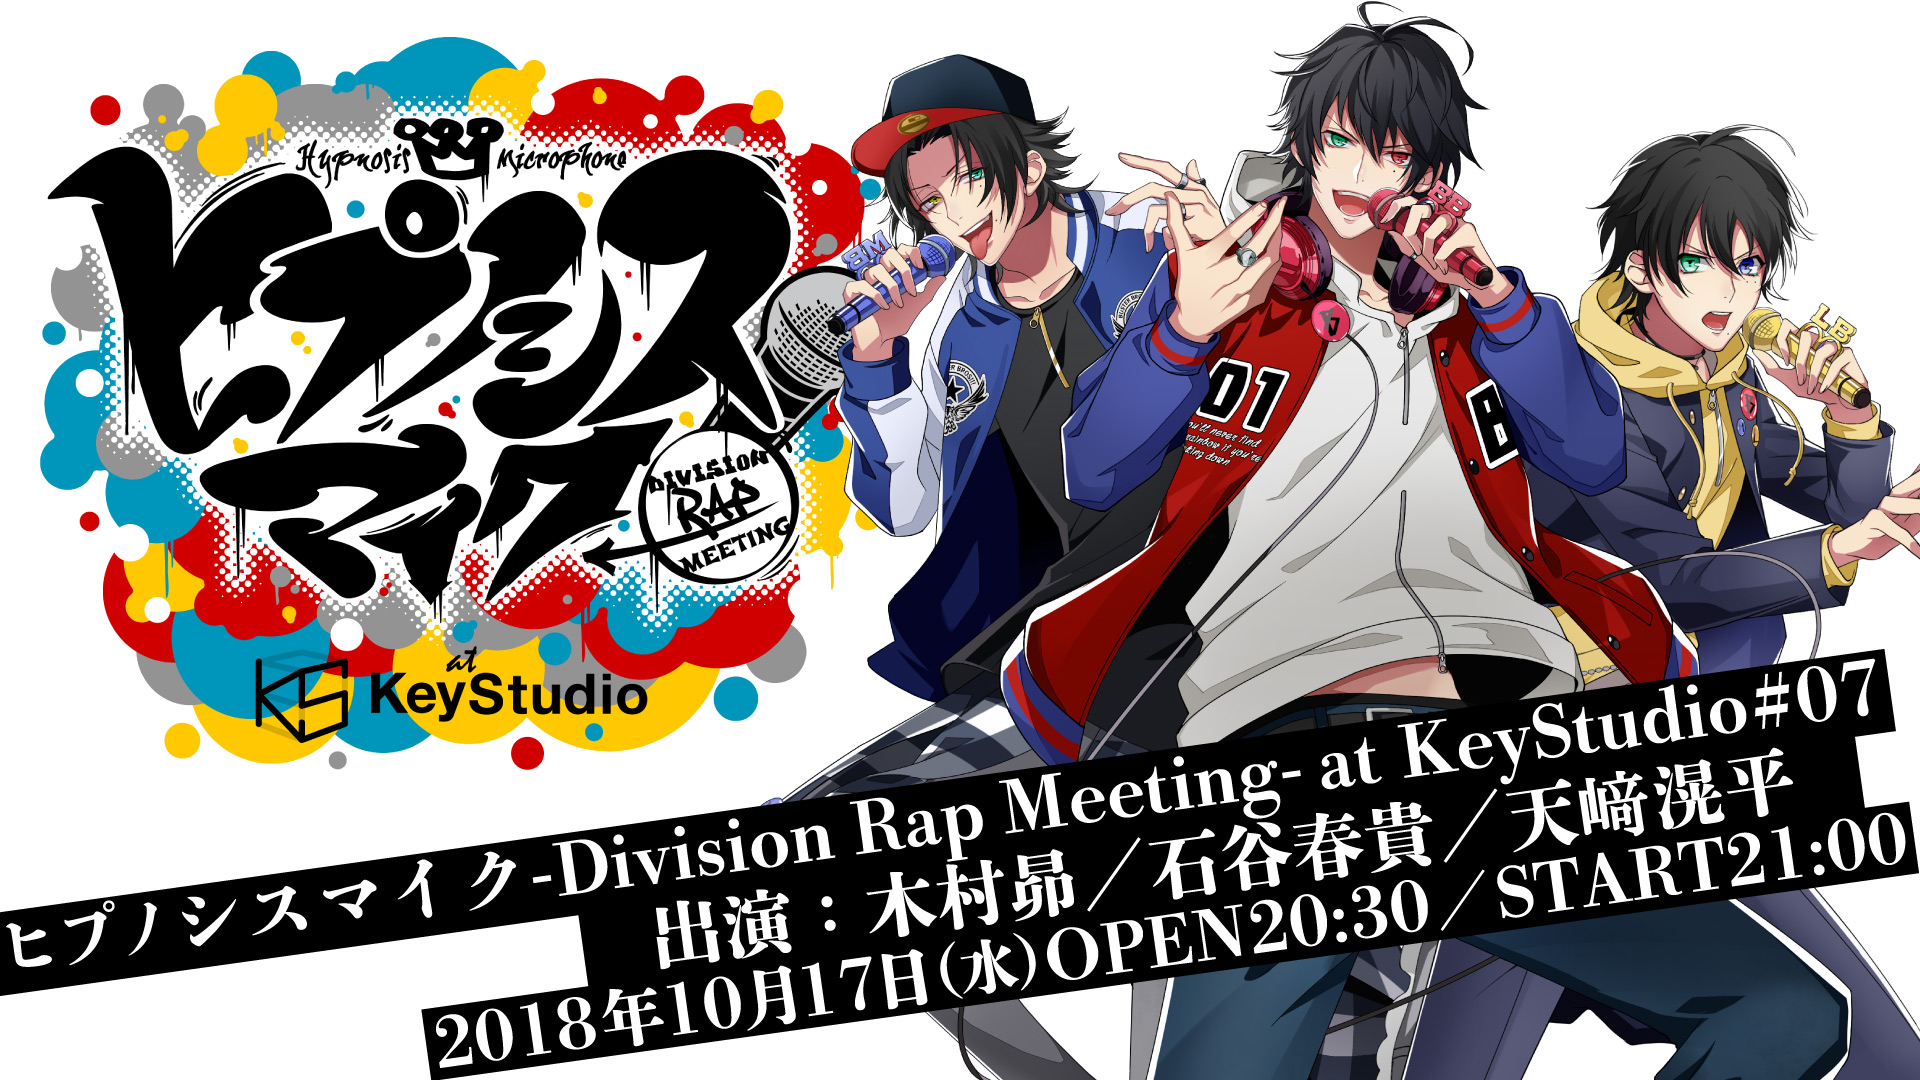 ヒプノシスマイク -Division Rap Meeting- at KeyStudio #07